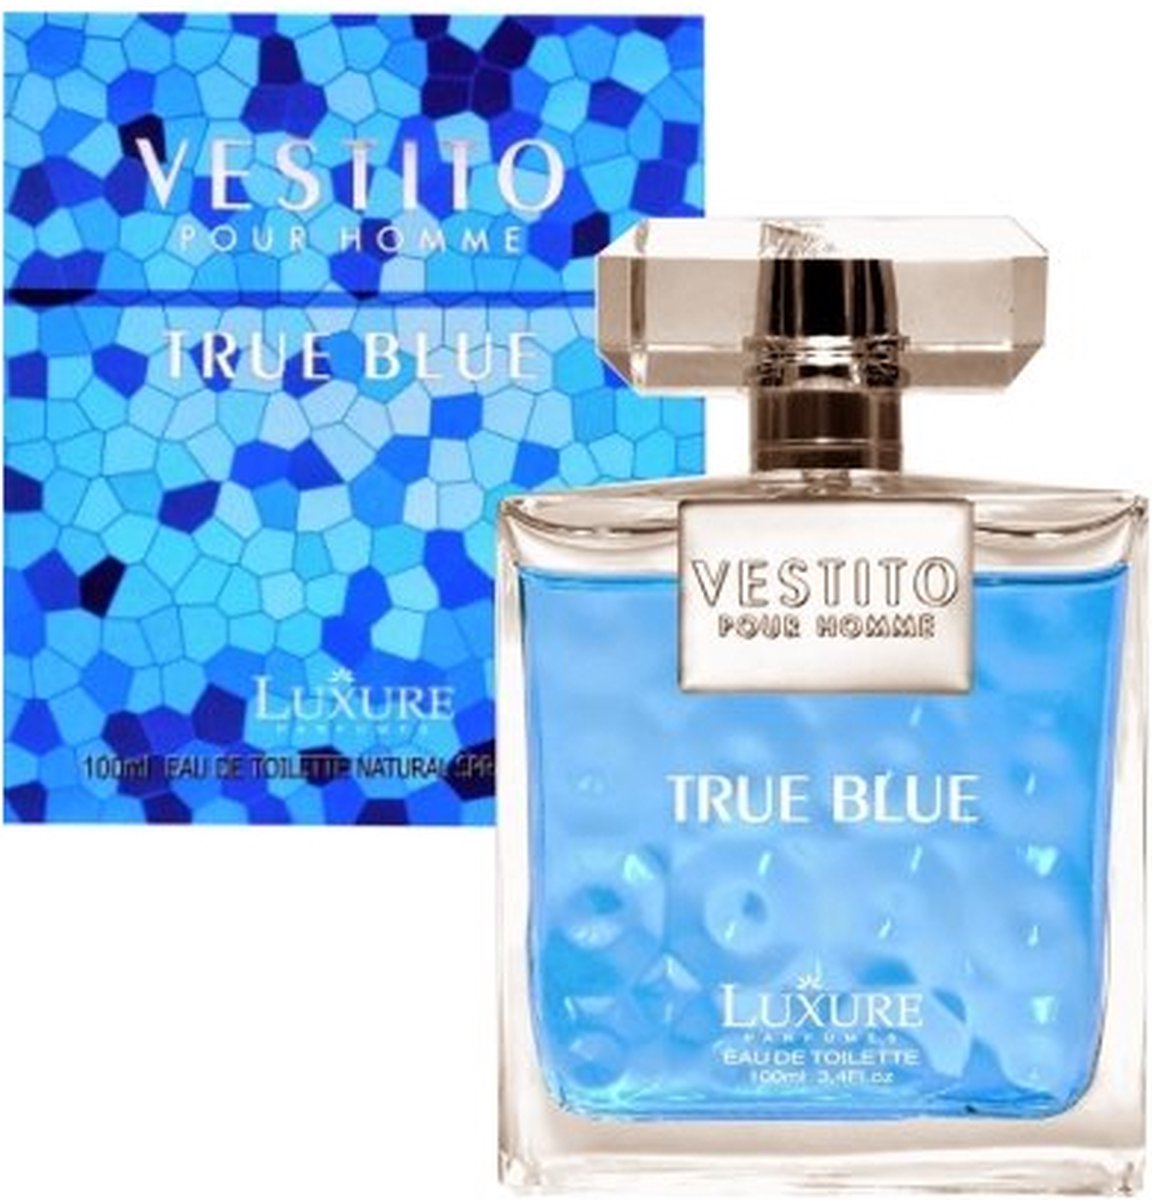 Houtachtig Aquatische merkgeur - Luxure - Vestito True Blue - Eau de Toilette - 100ml - Made in France